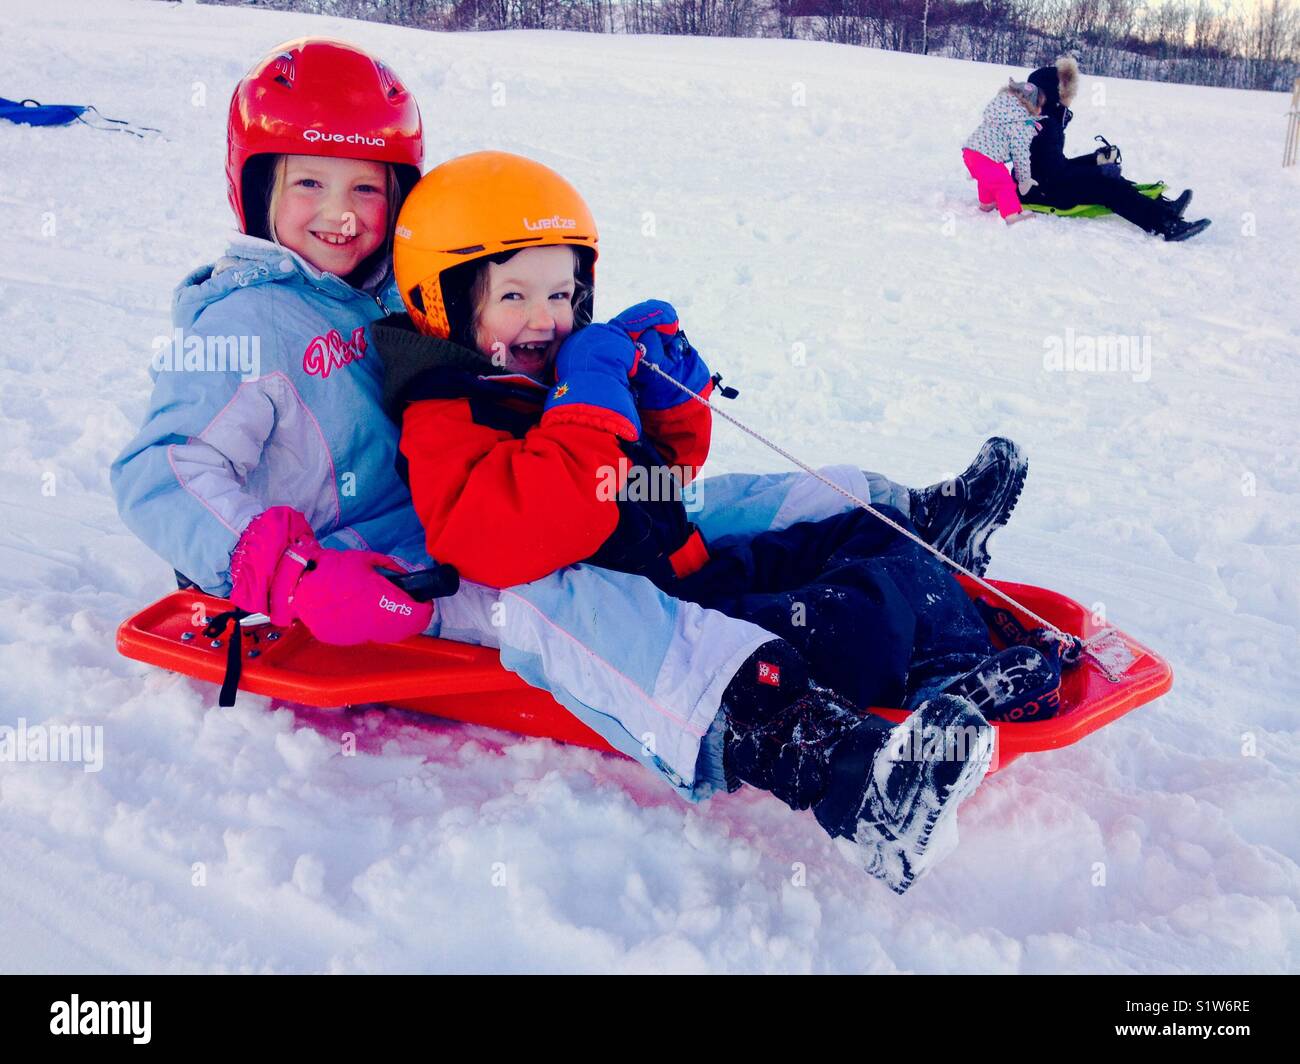 Girls / kids / children / child sledging on a sledge / sled on new snow. Stock Photo